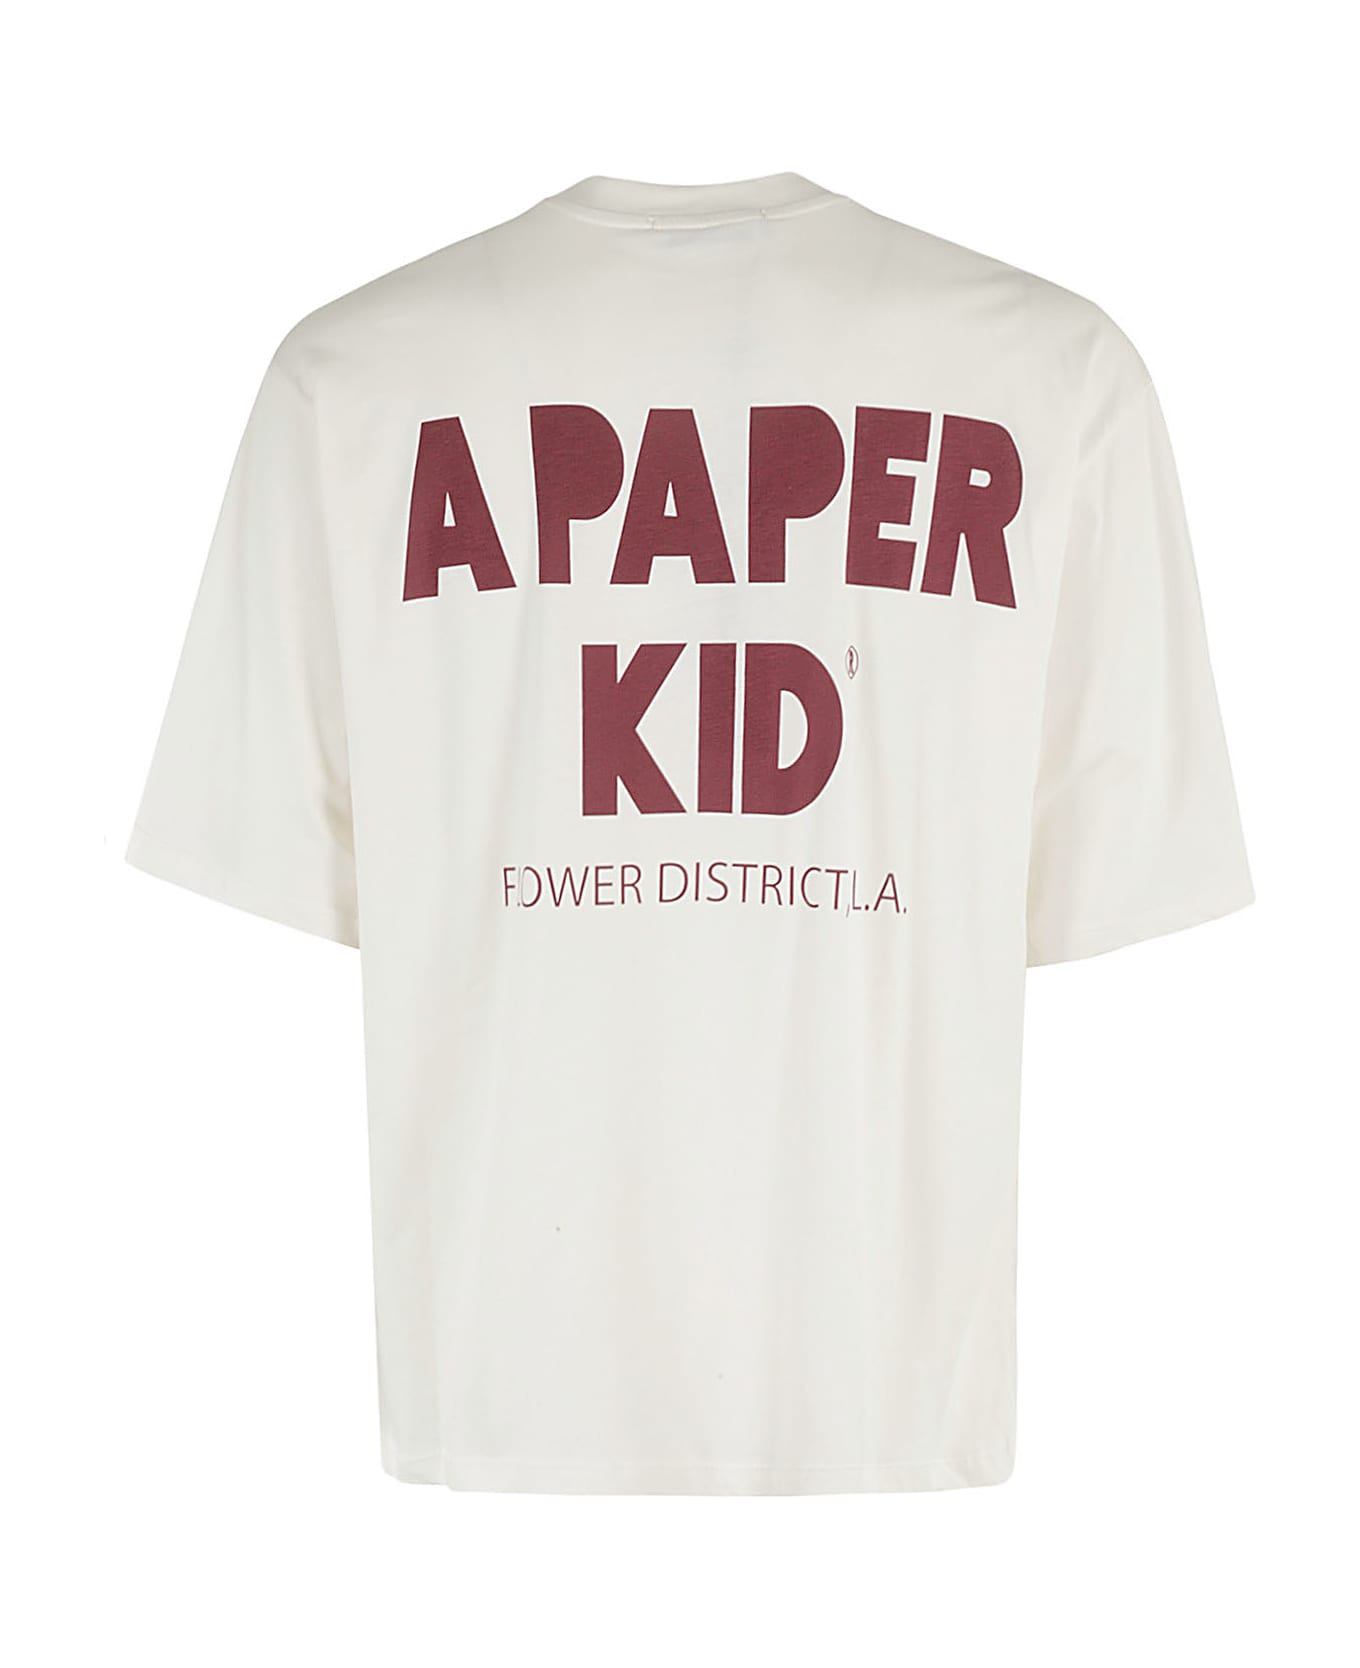 A Paper Kid T Shirt - Crema